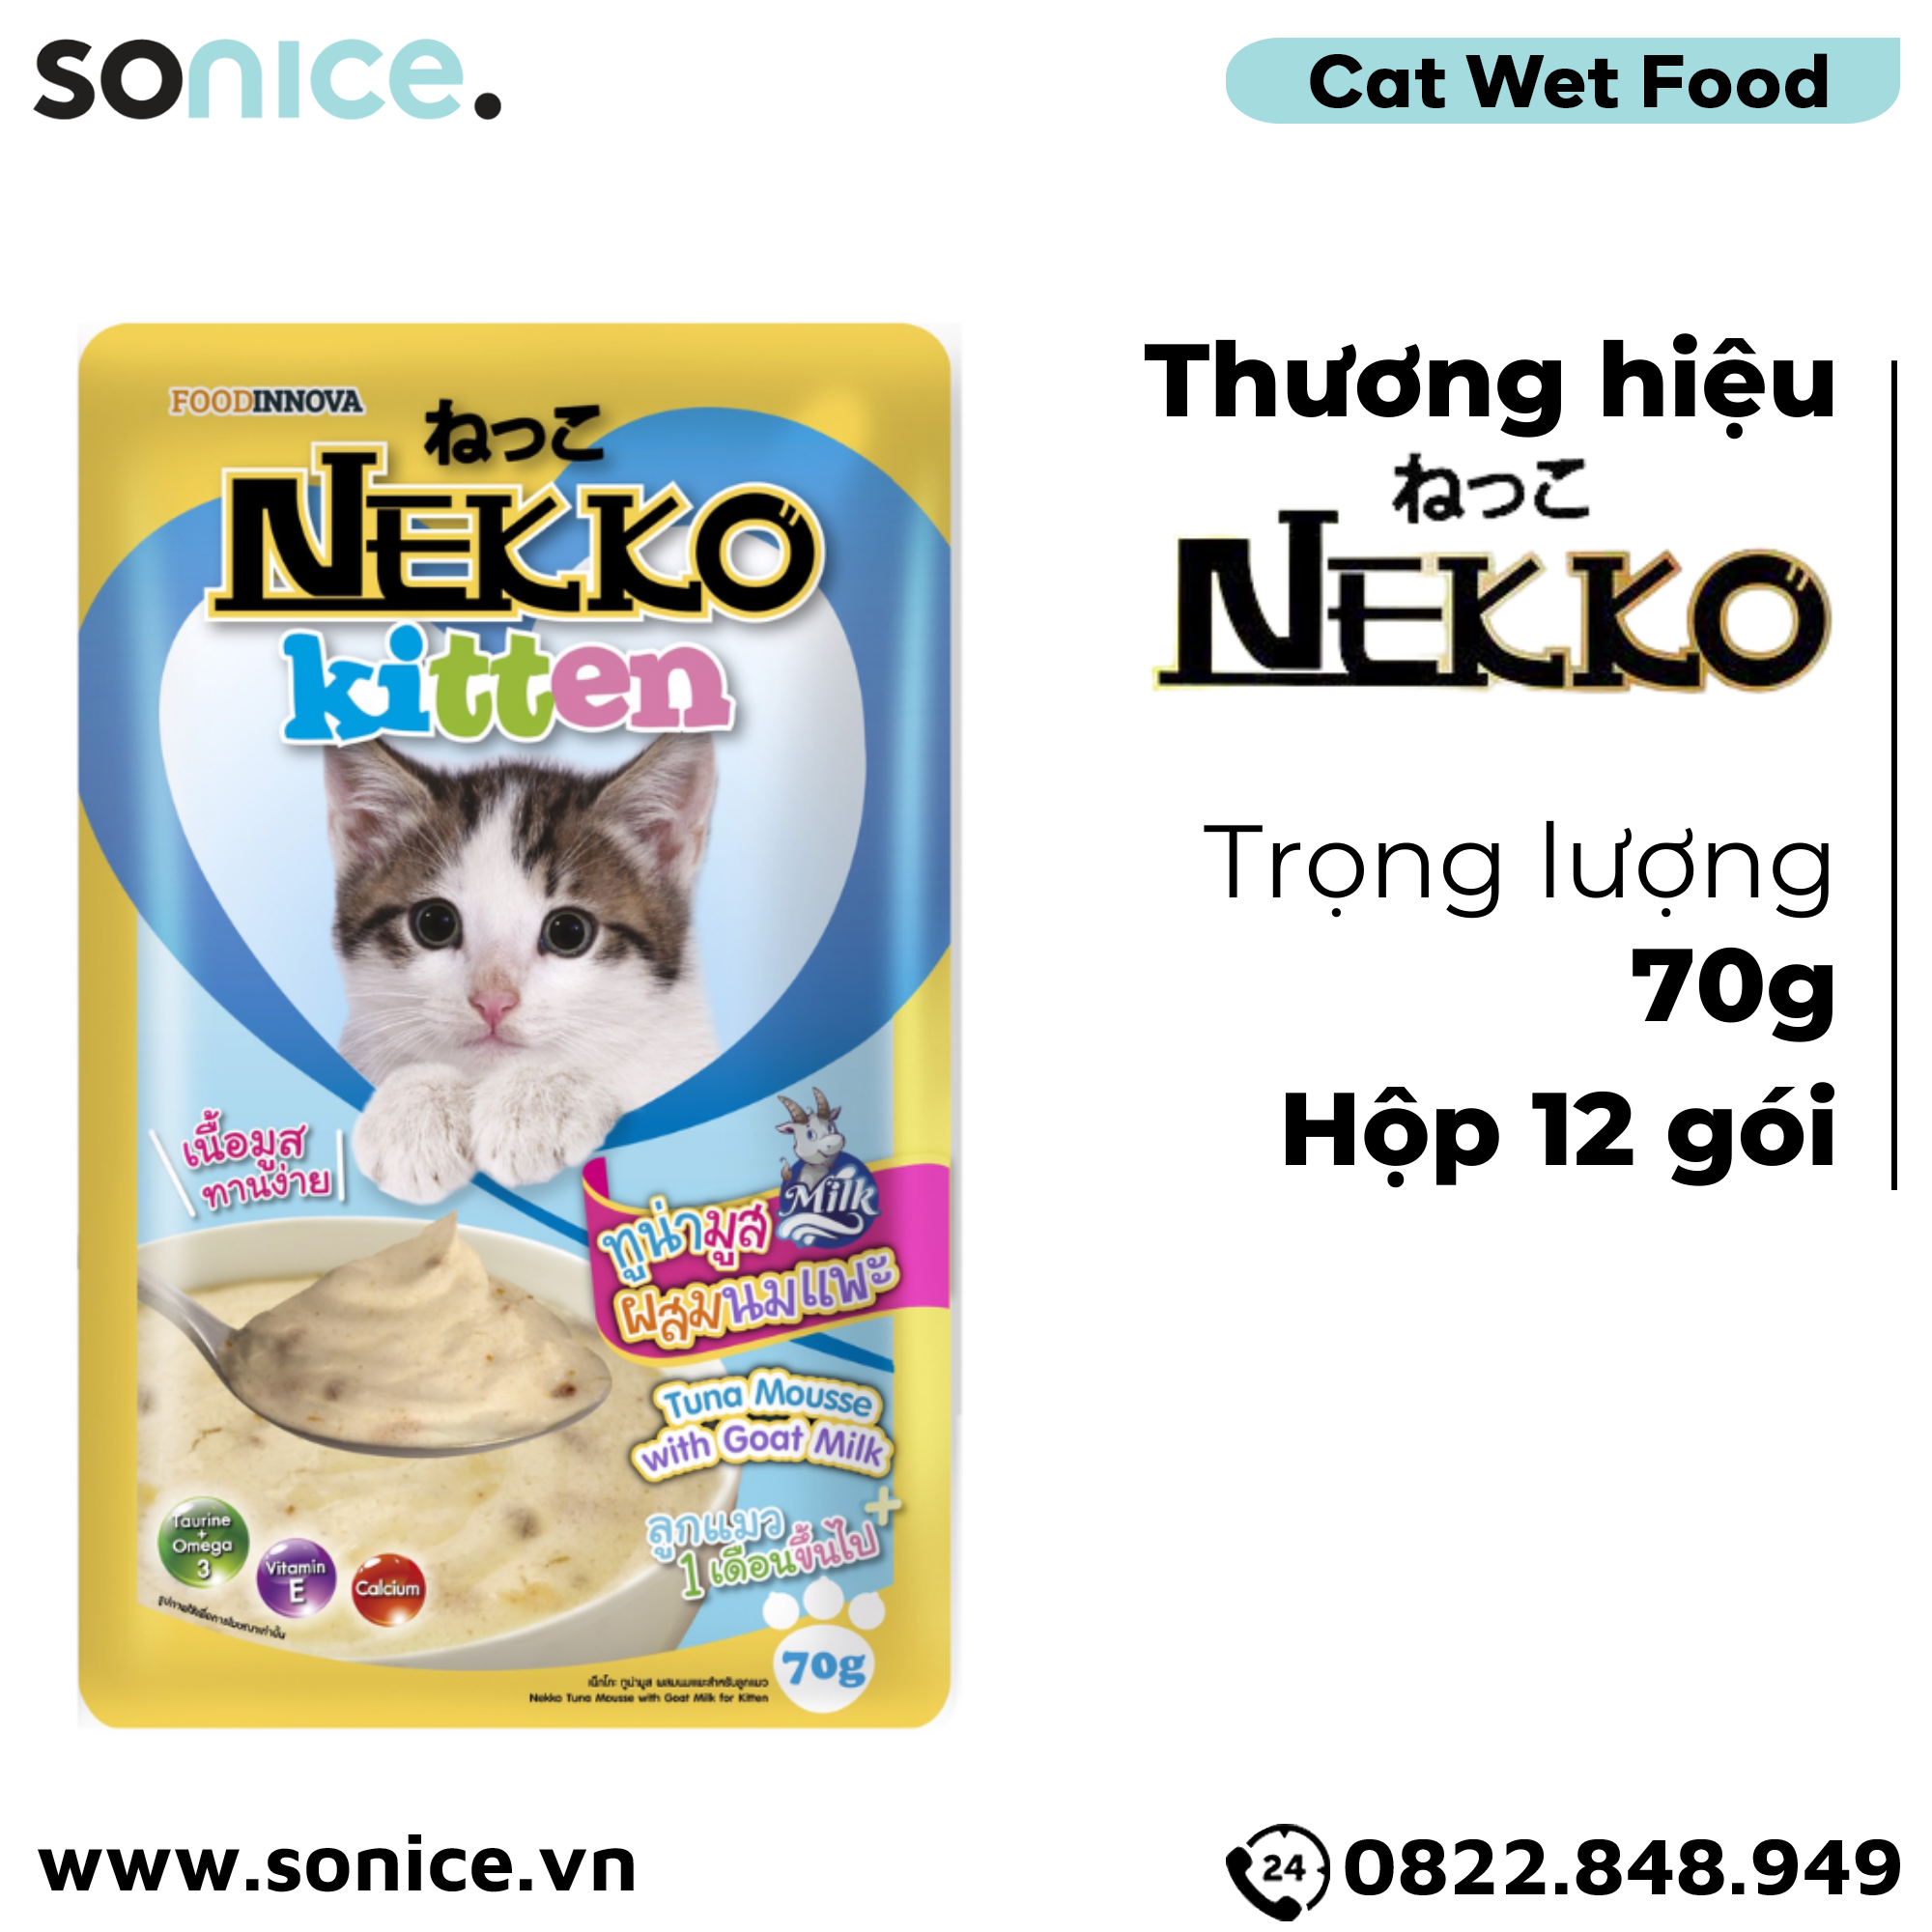  Pate mèo NEKKO KITTEN Tuna & Goat Milk 70g - 1 hộp 12 gói SONICE. 